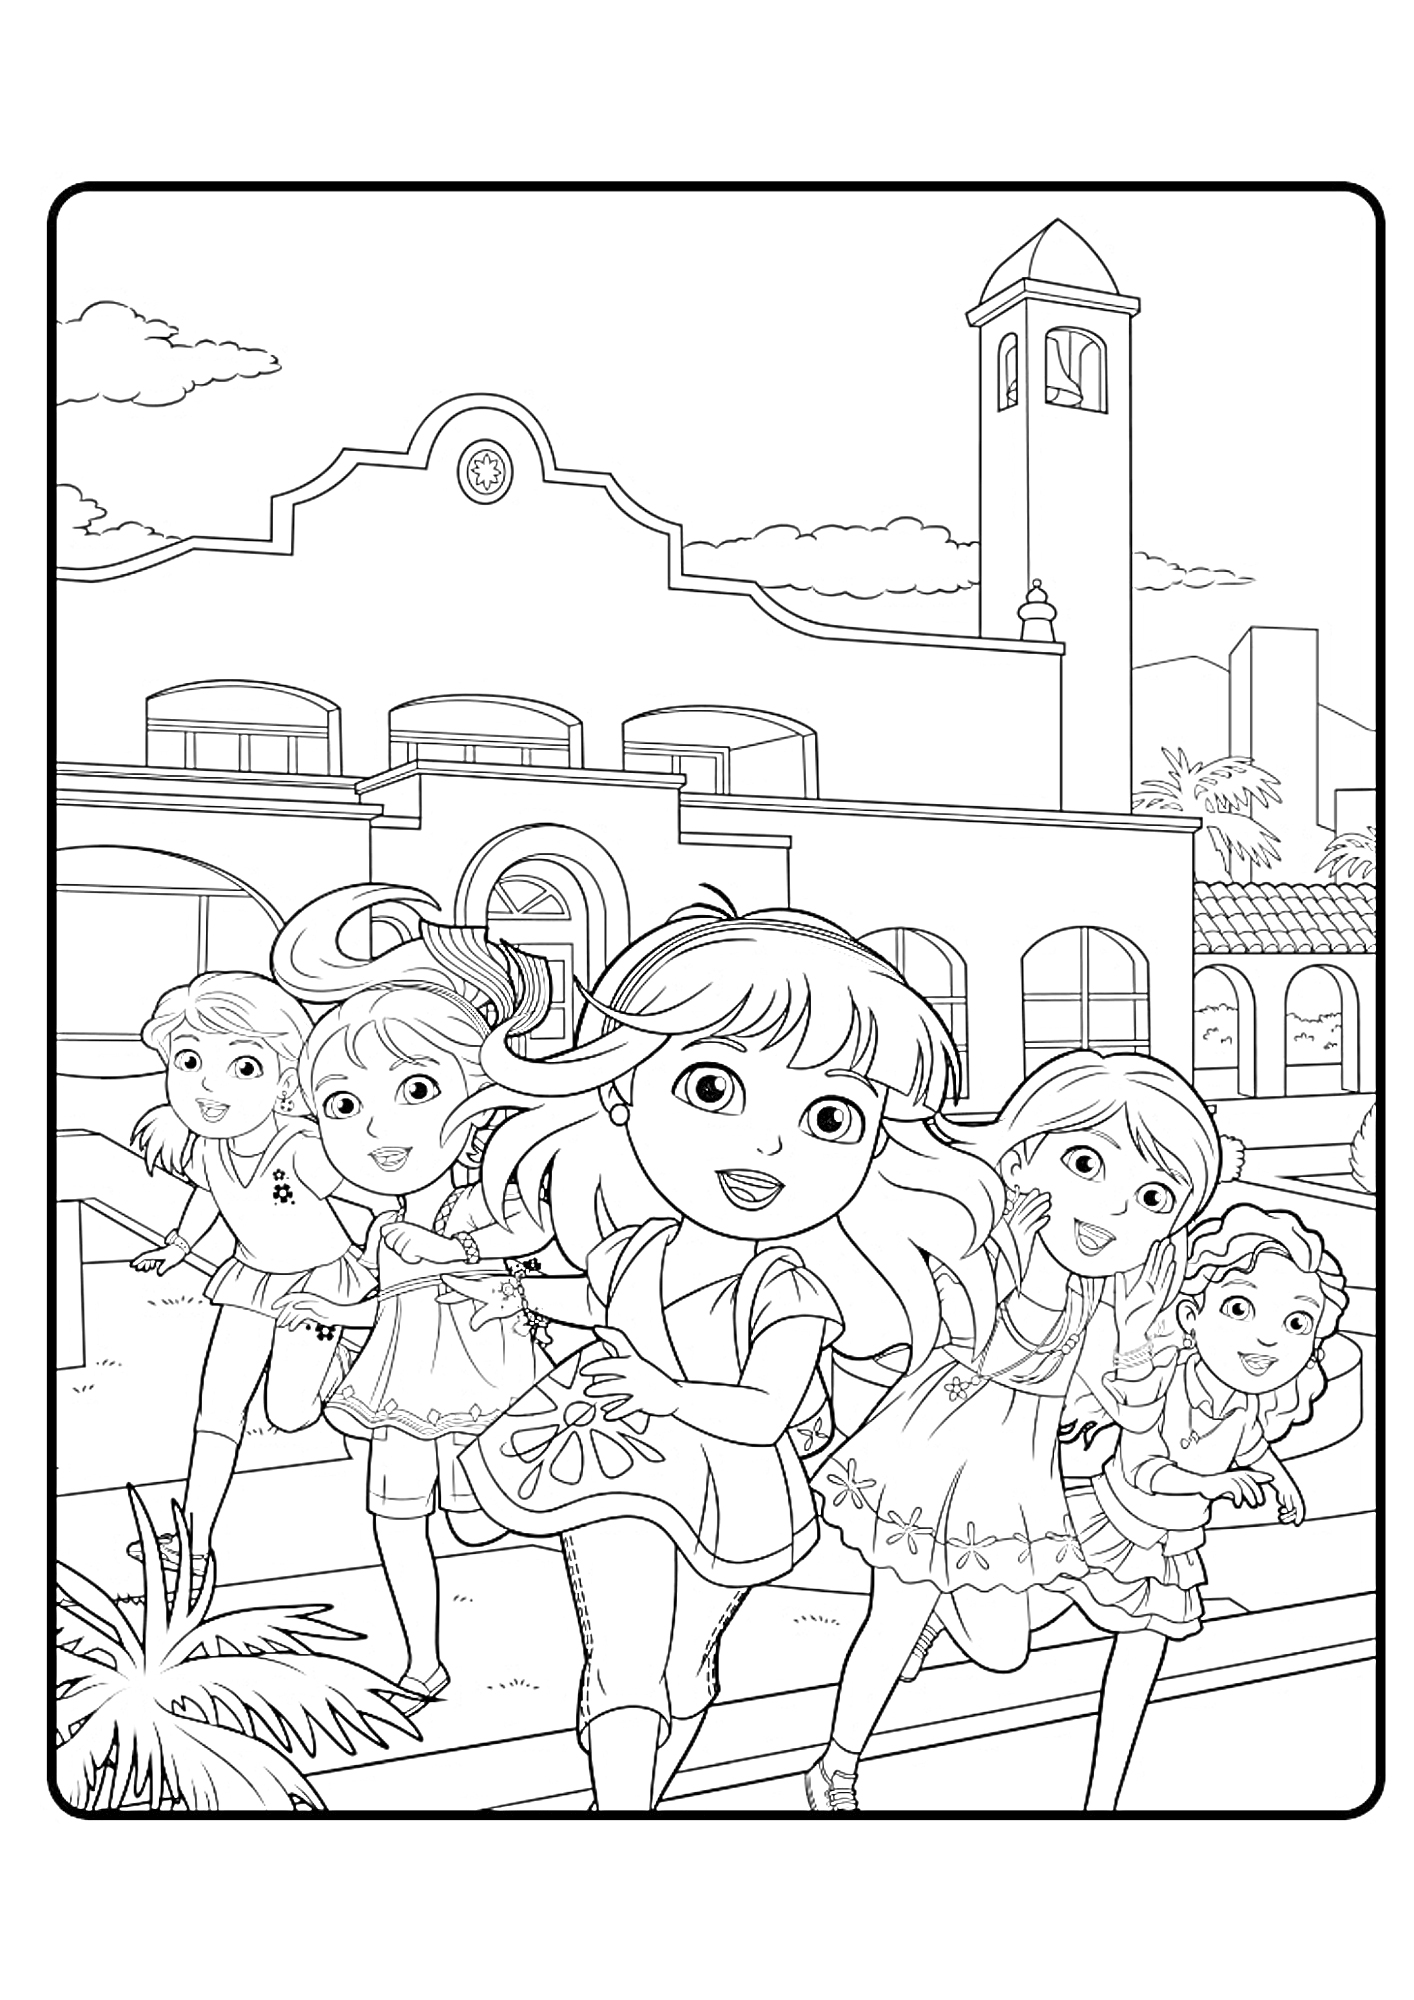 Раскраска Даша и друзья на фоне школы с башней и часами